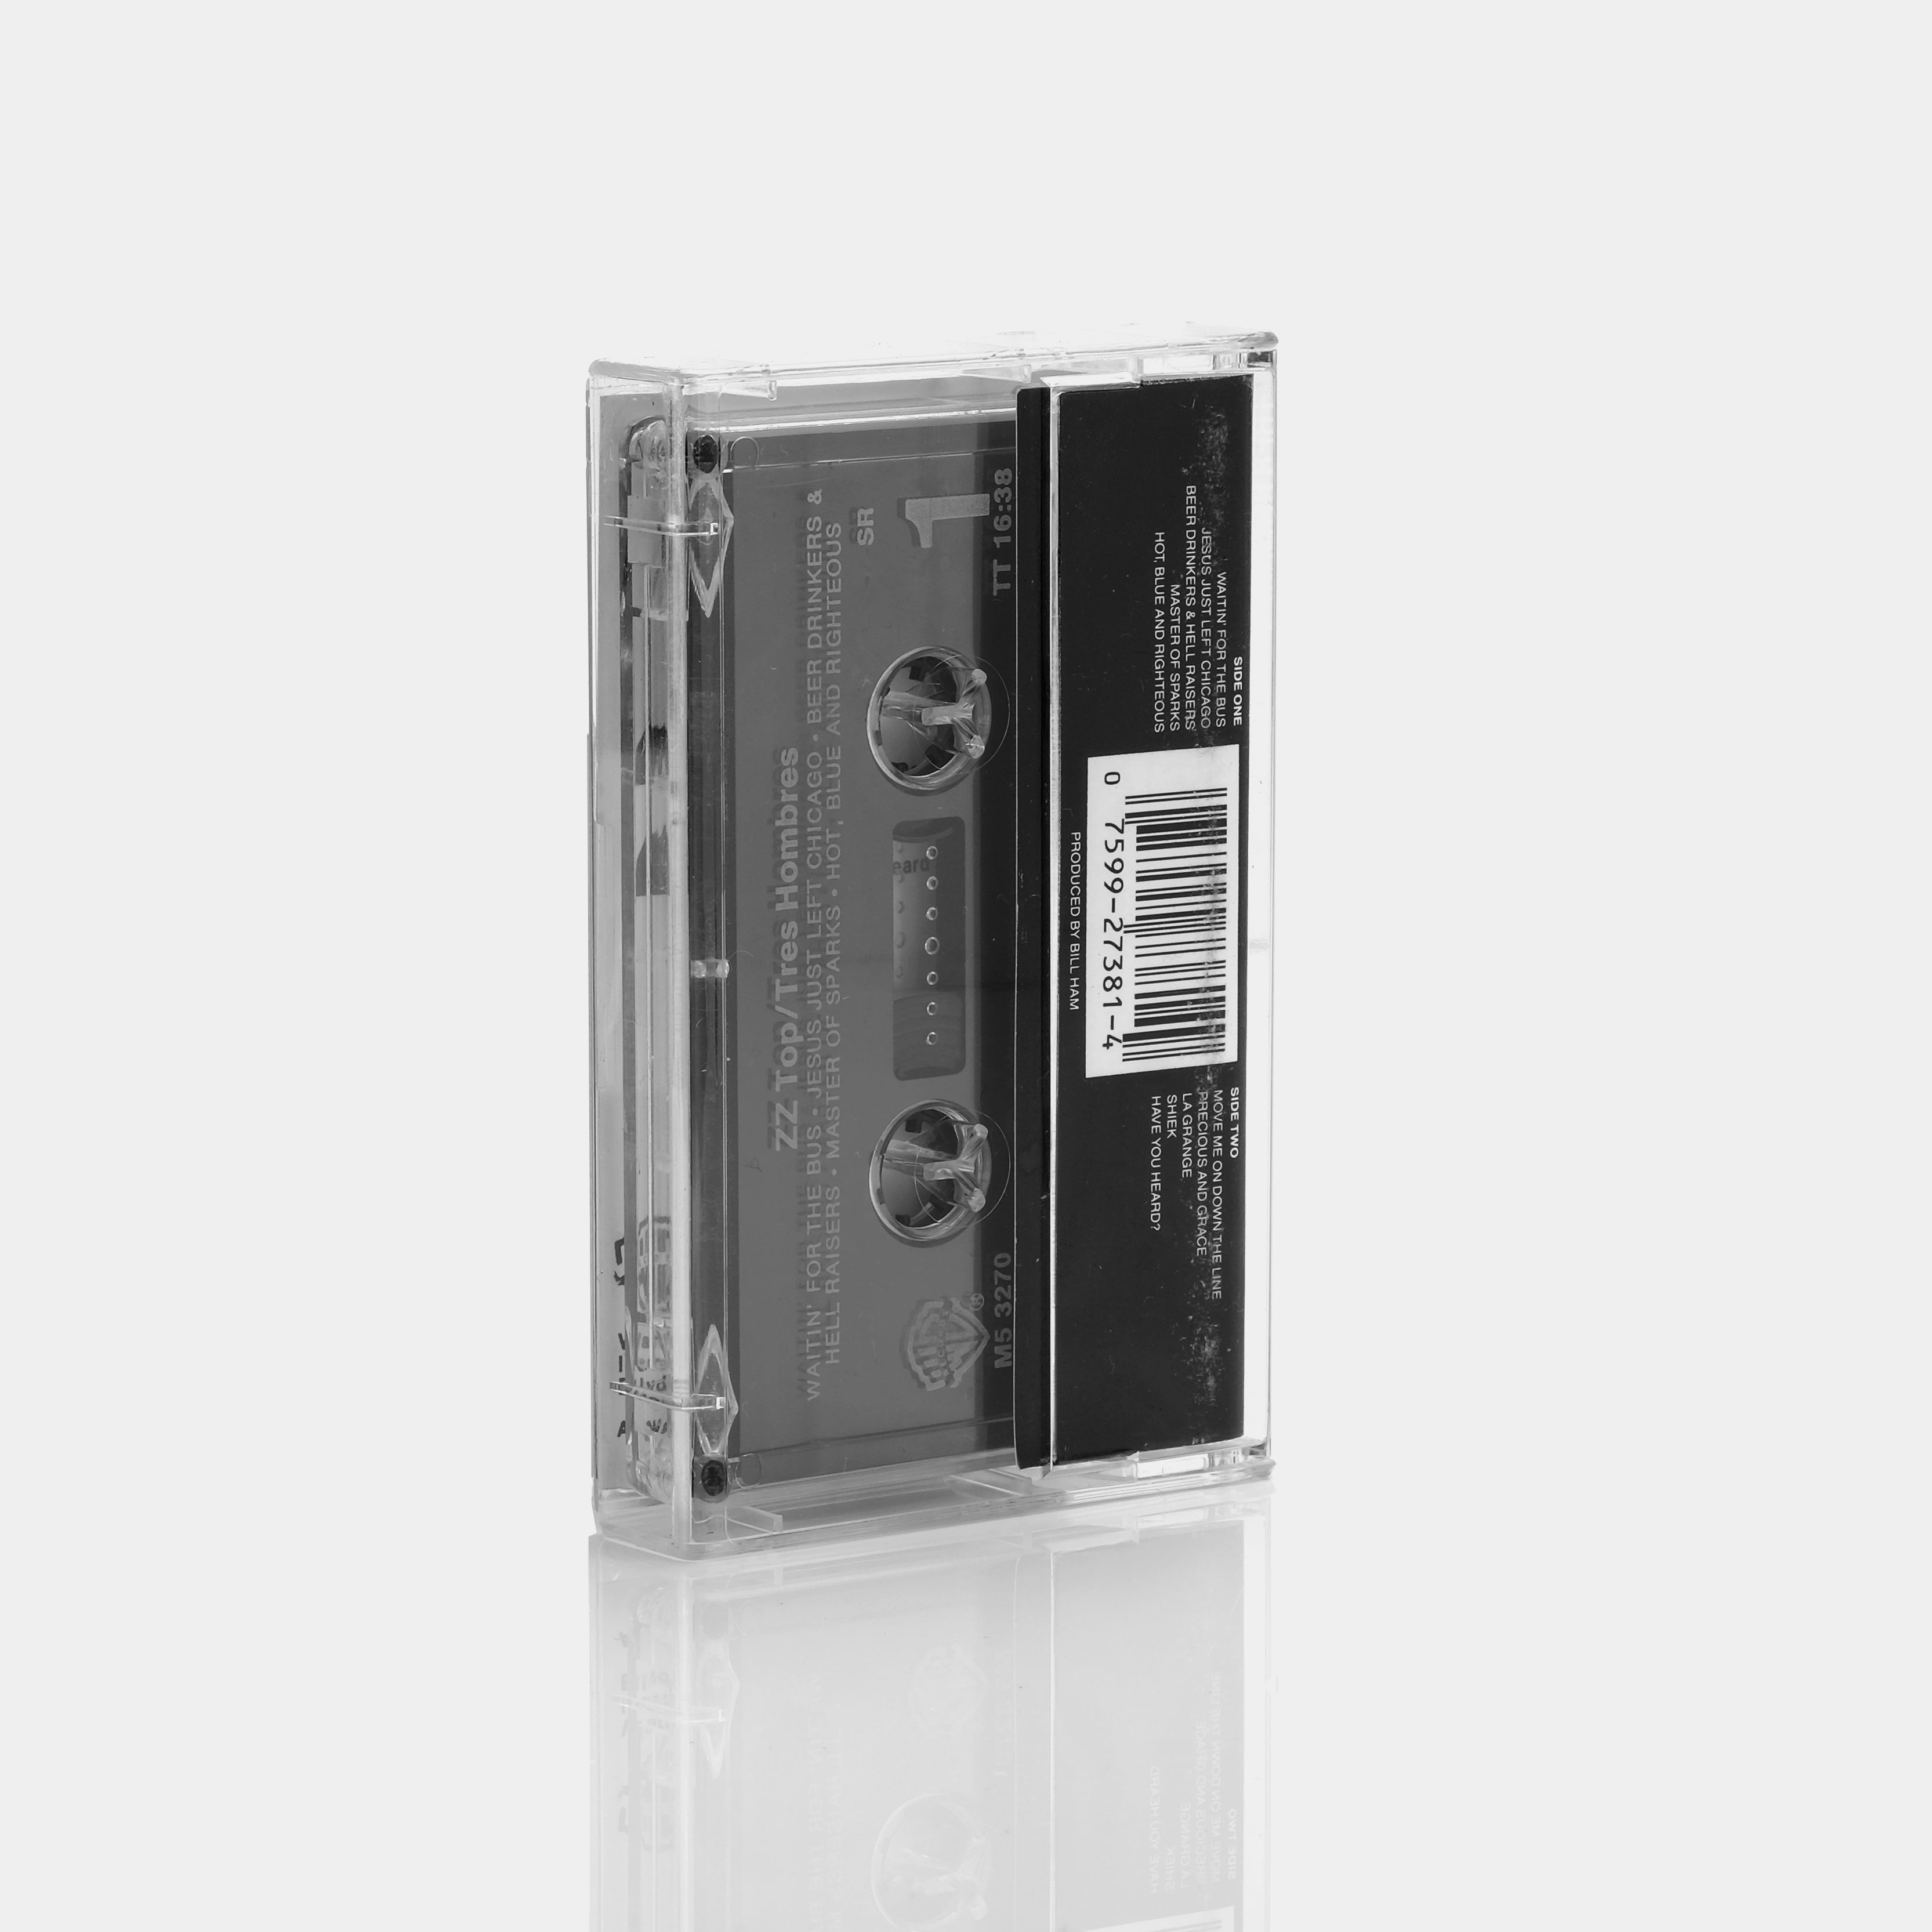 ZZ Top - Tres Hombres Cassette Tape